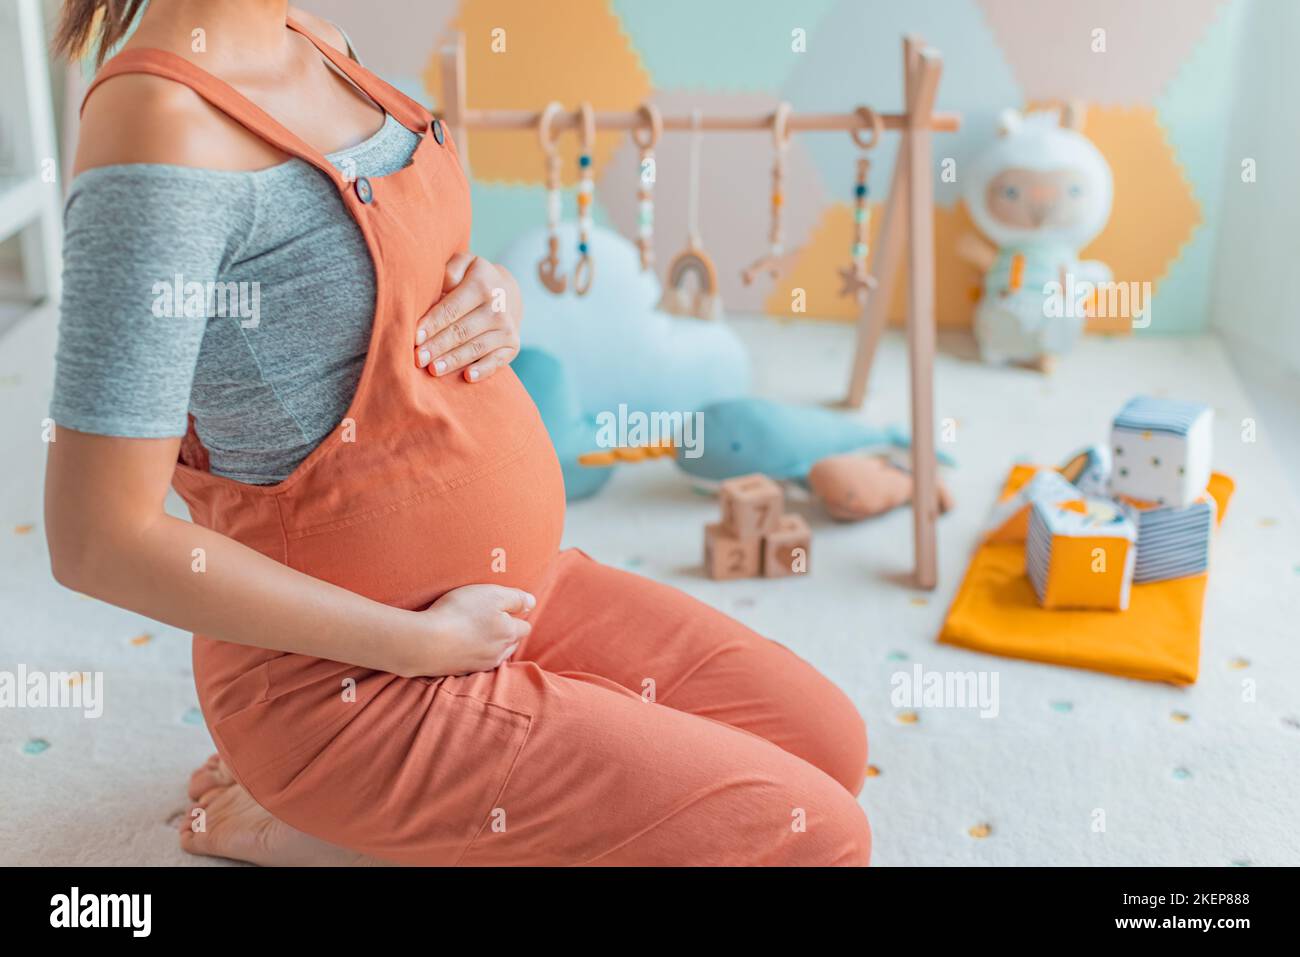 Beneficios para embarazadas fotografías e imágenes de alta resolución -  Página 2 - Alamy